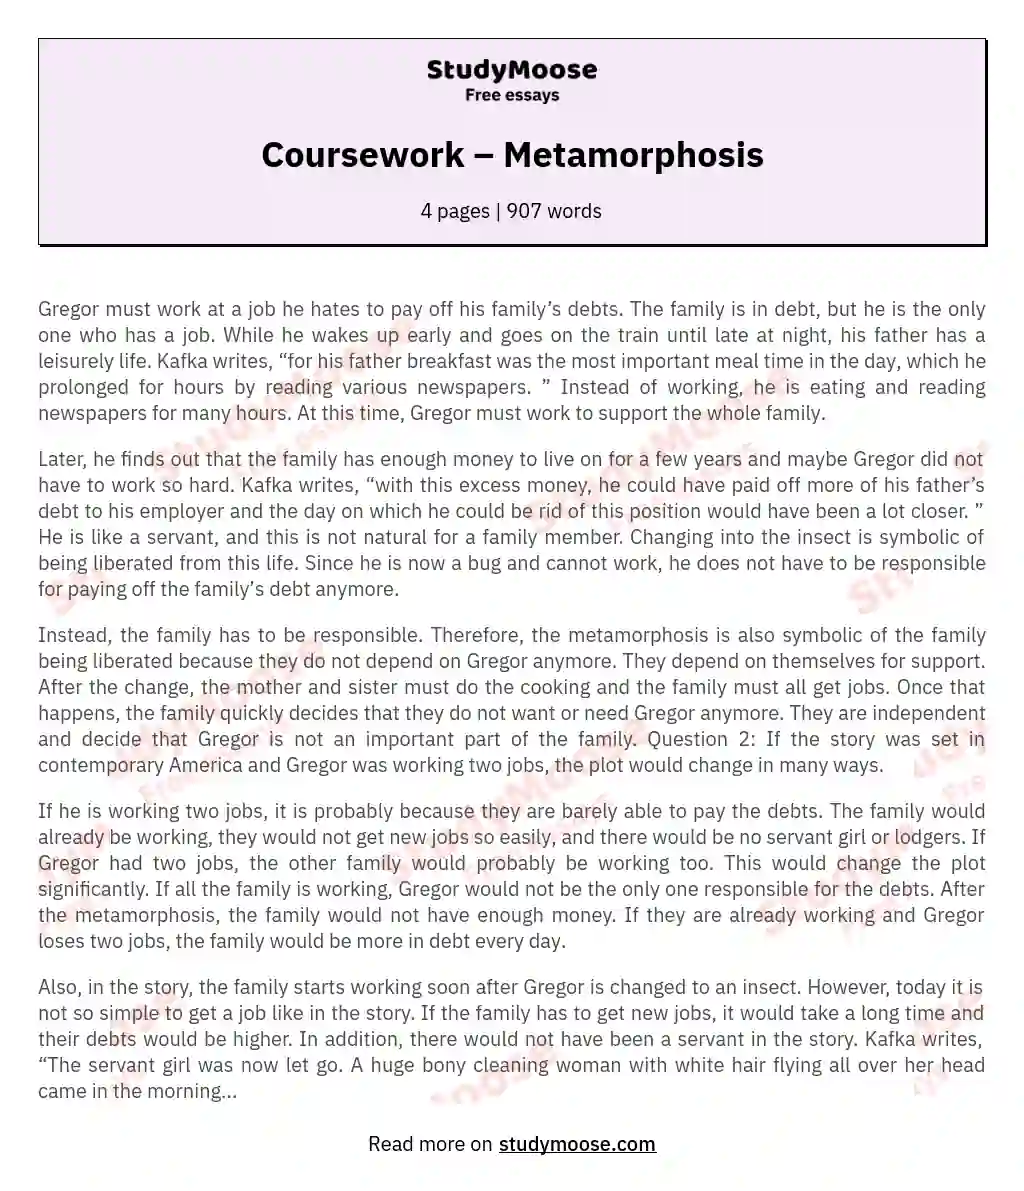 Coursework – Metamorphosis essay